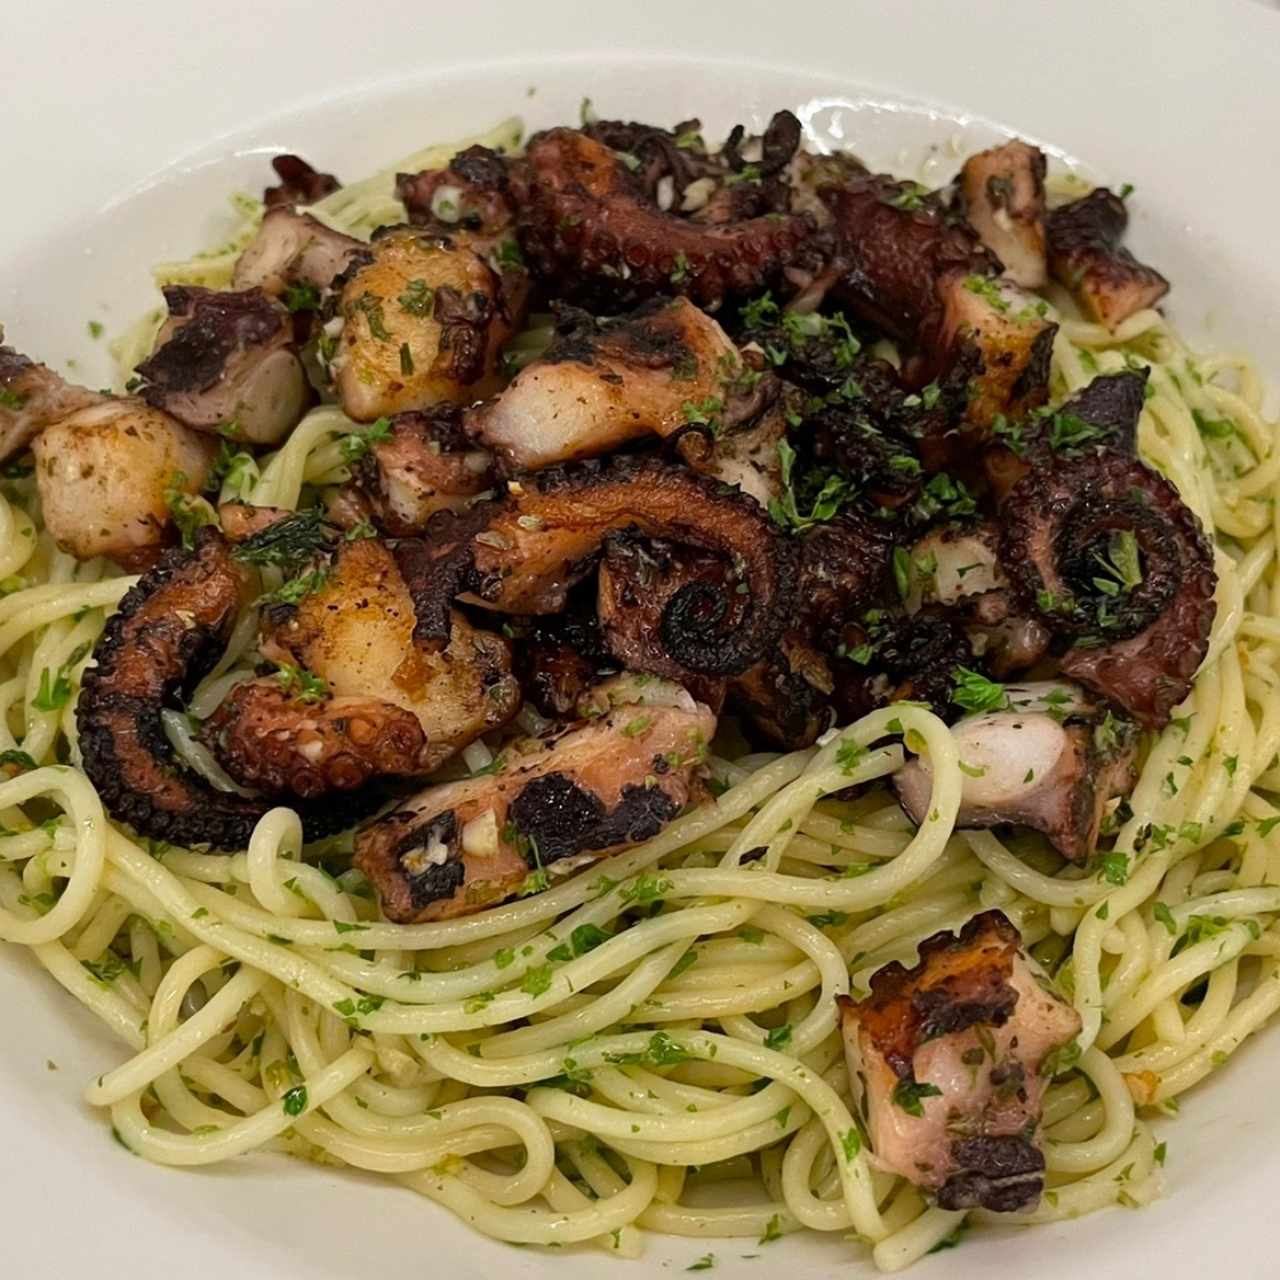 Spaghetti con Pechuga de Pollo, Brocheta de Pollo o de Mariscos. Al Oleo, salsa roja o blanca.